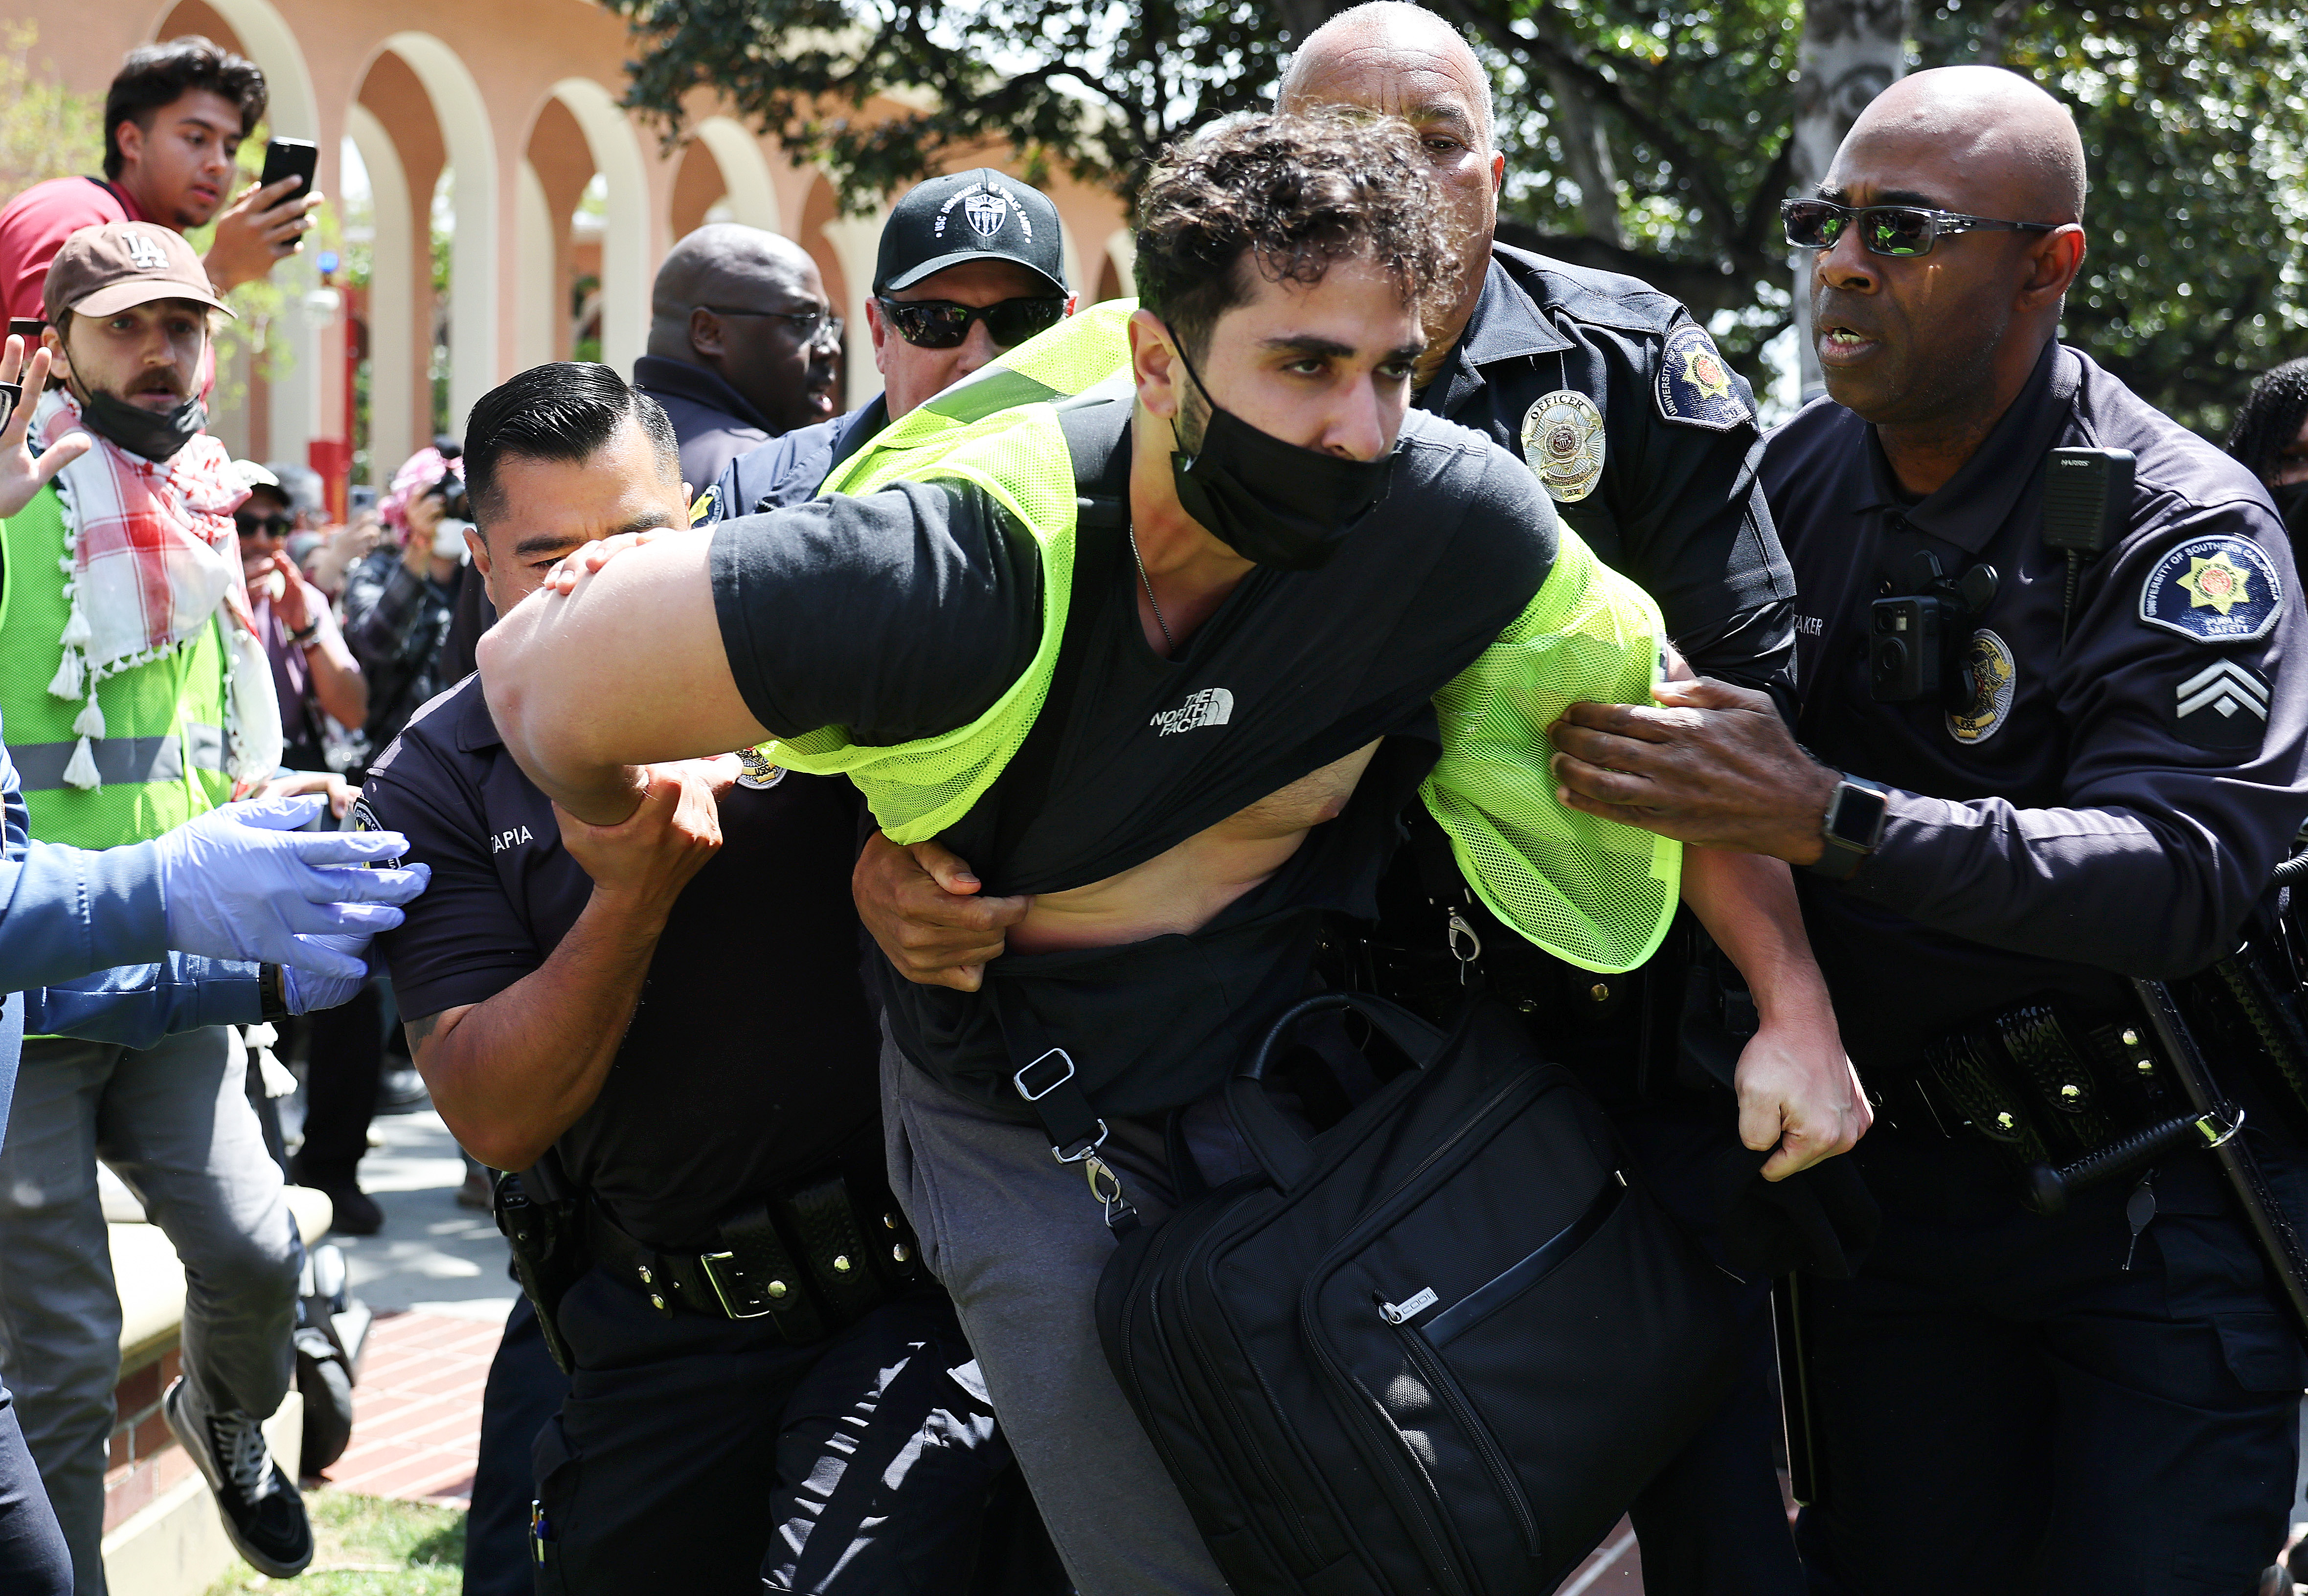 Fotos: protestas propalestinos y proisraelíes en USC y UCLA